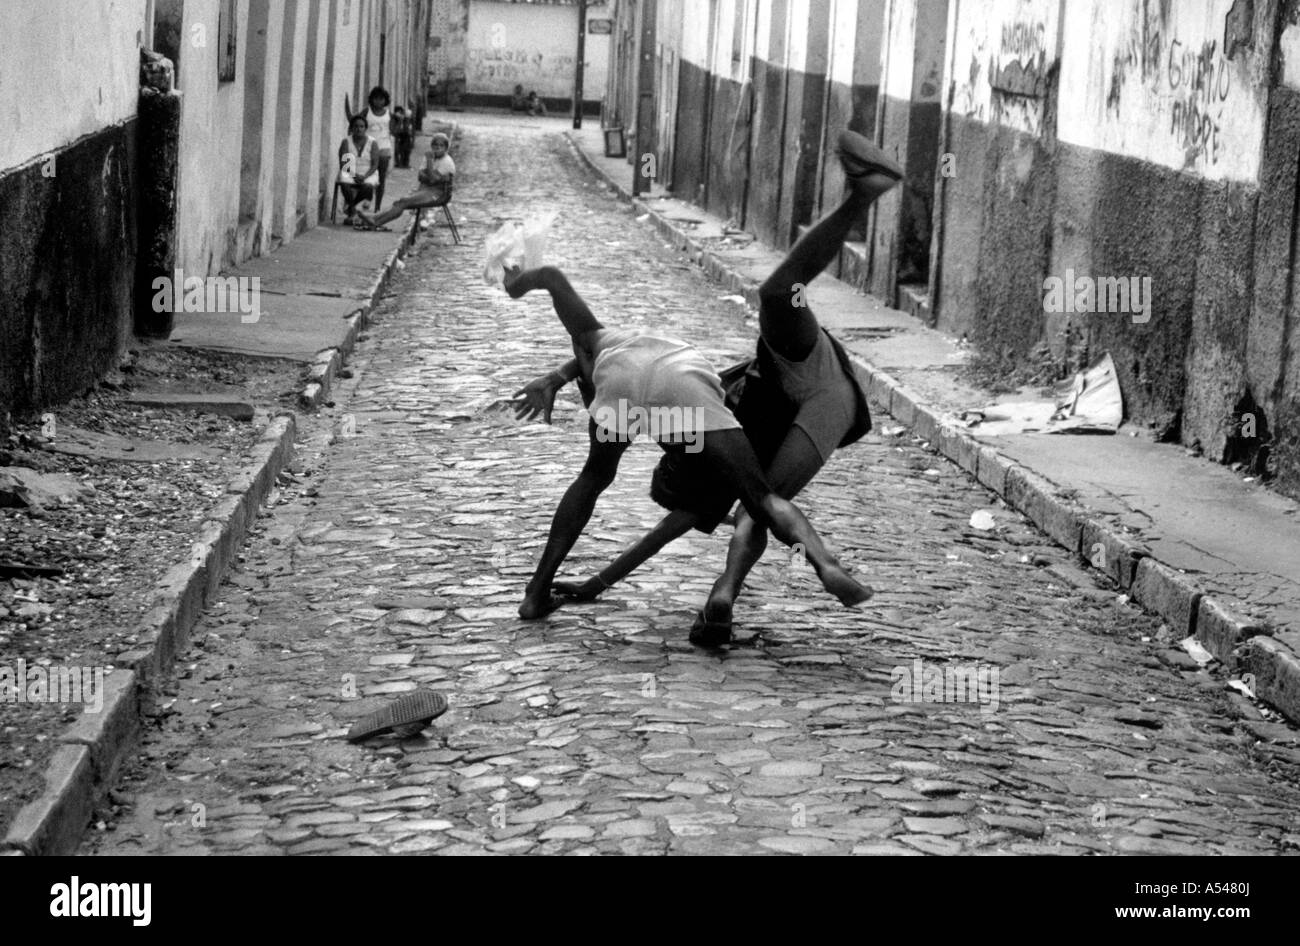 Painet hn1698 222 in bianco e nero di bambini di strada ragazzi combattimenti Sao Luis in Brasile paese nazione in via di sviluppo meno economicamente Foto Stock